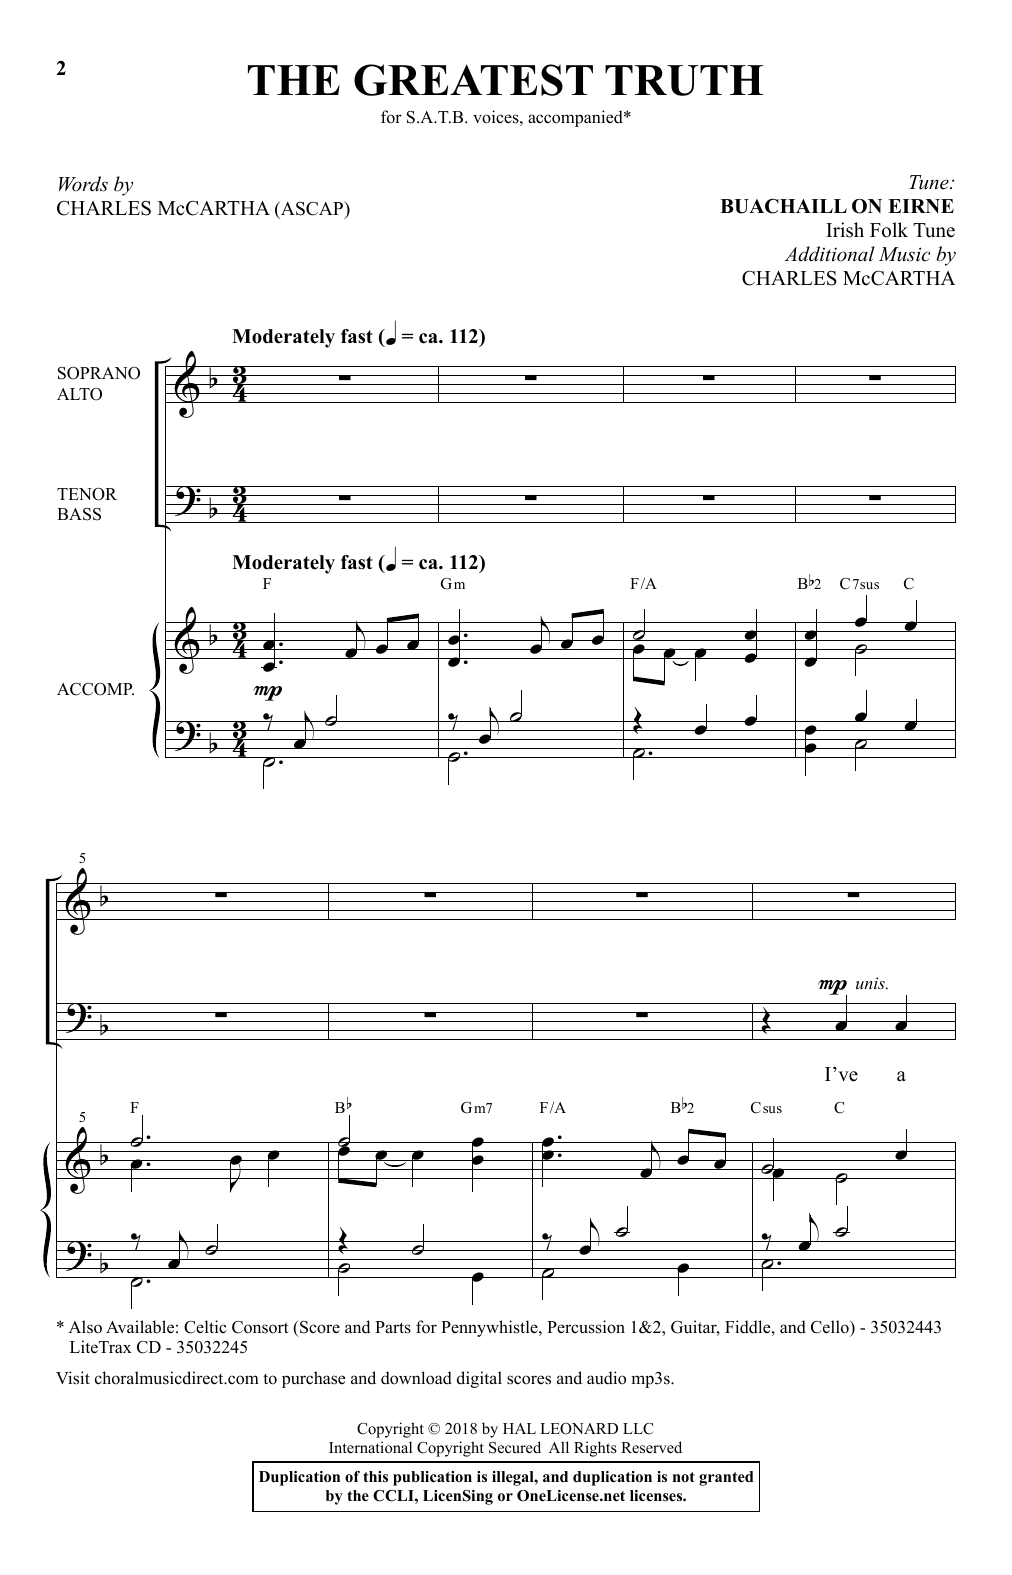 The Greatest Truth (SATB Choir) von Charles McCartha